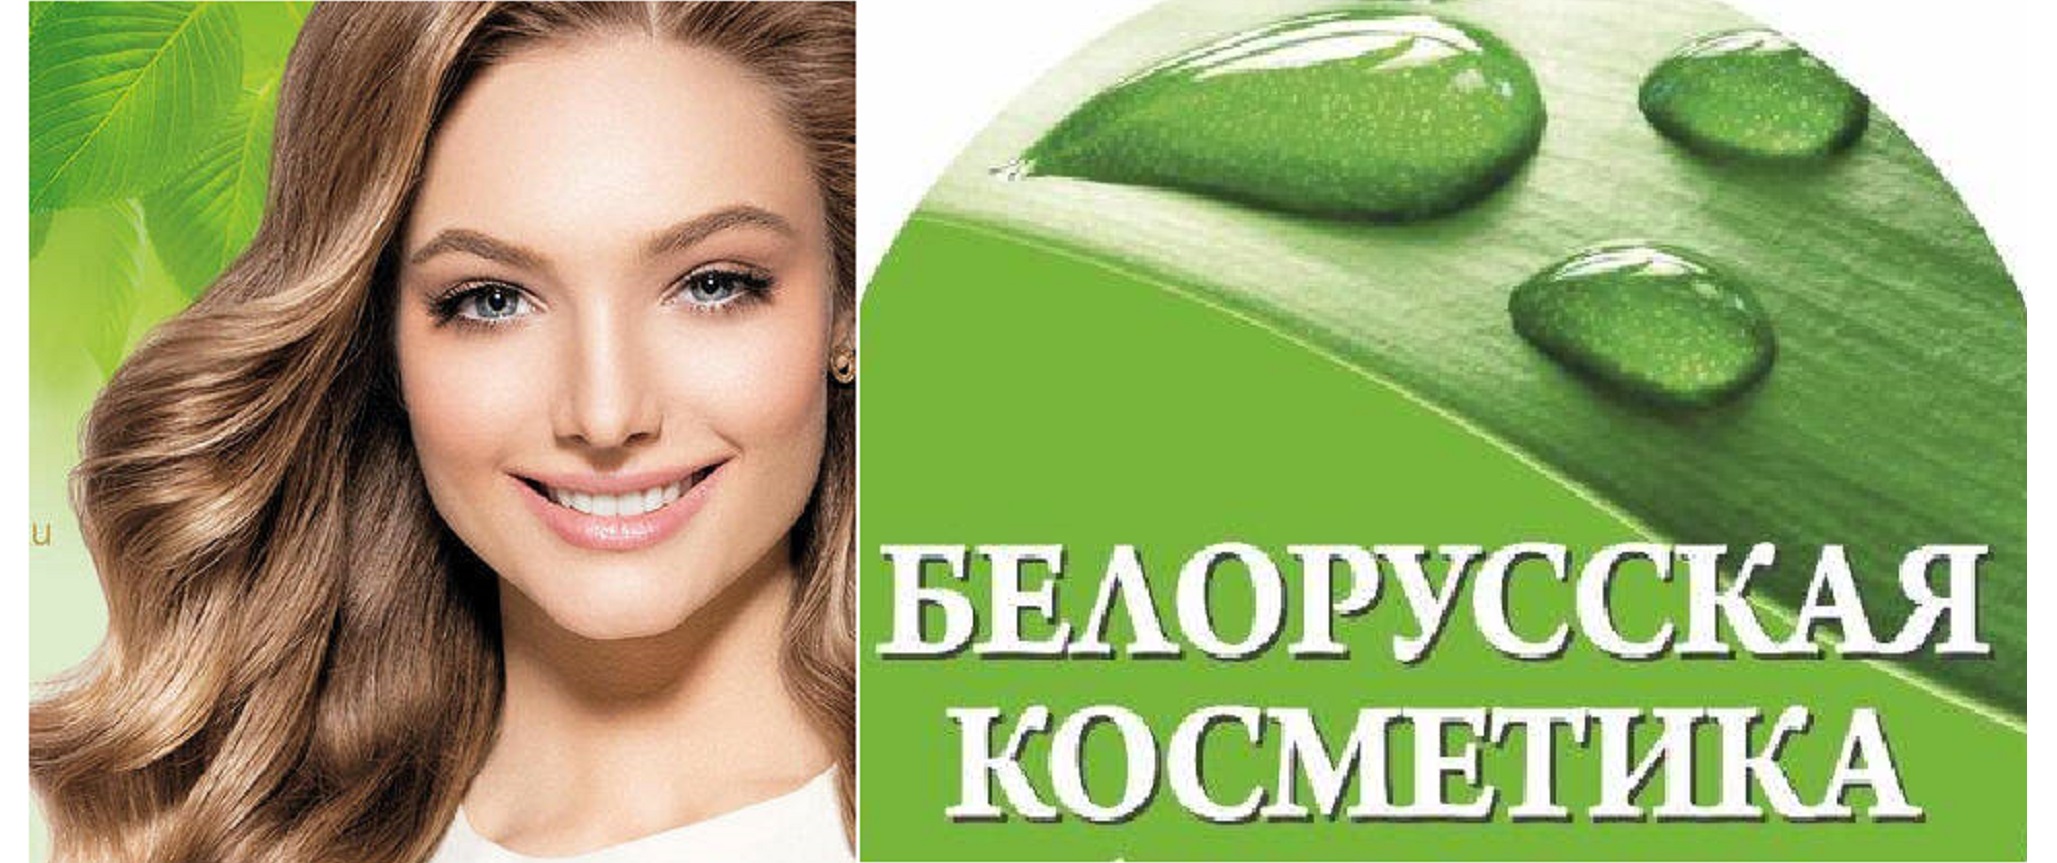 Та самая белорусская косметика! Натуральная, качественная, бюджетная. Уходовые средства для лица, тела, волос. Проверено временем!